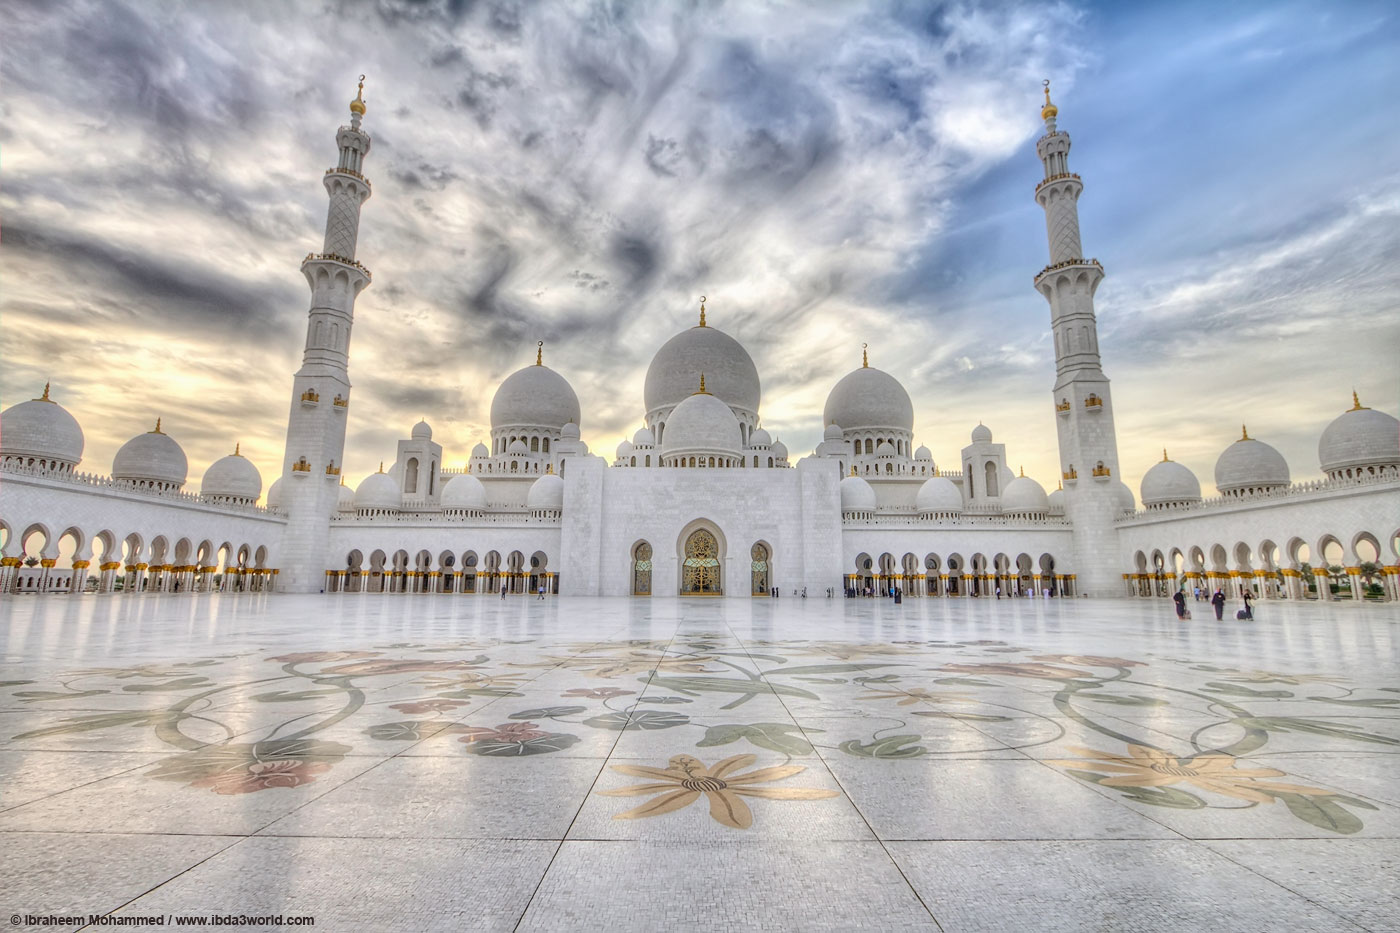 صور خلفيات اسلامية تحميل خلفيات اسلامية صور خلفيات اسلامية اجمل